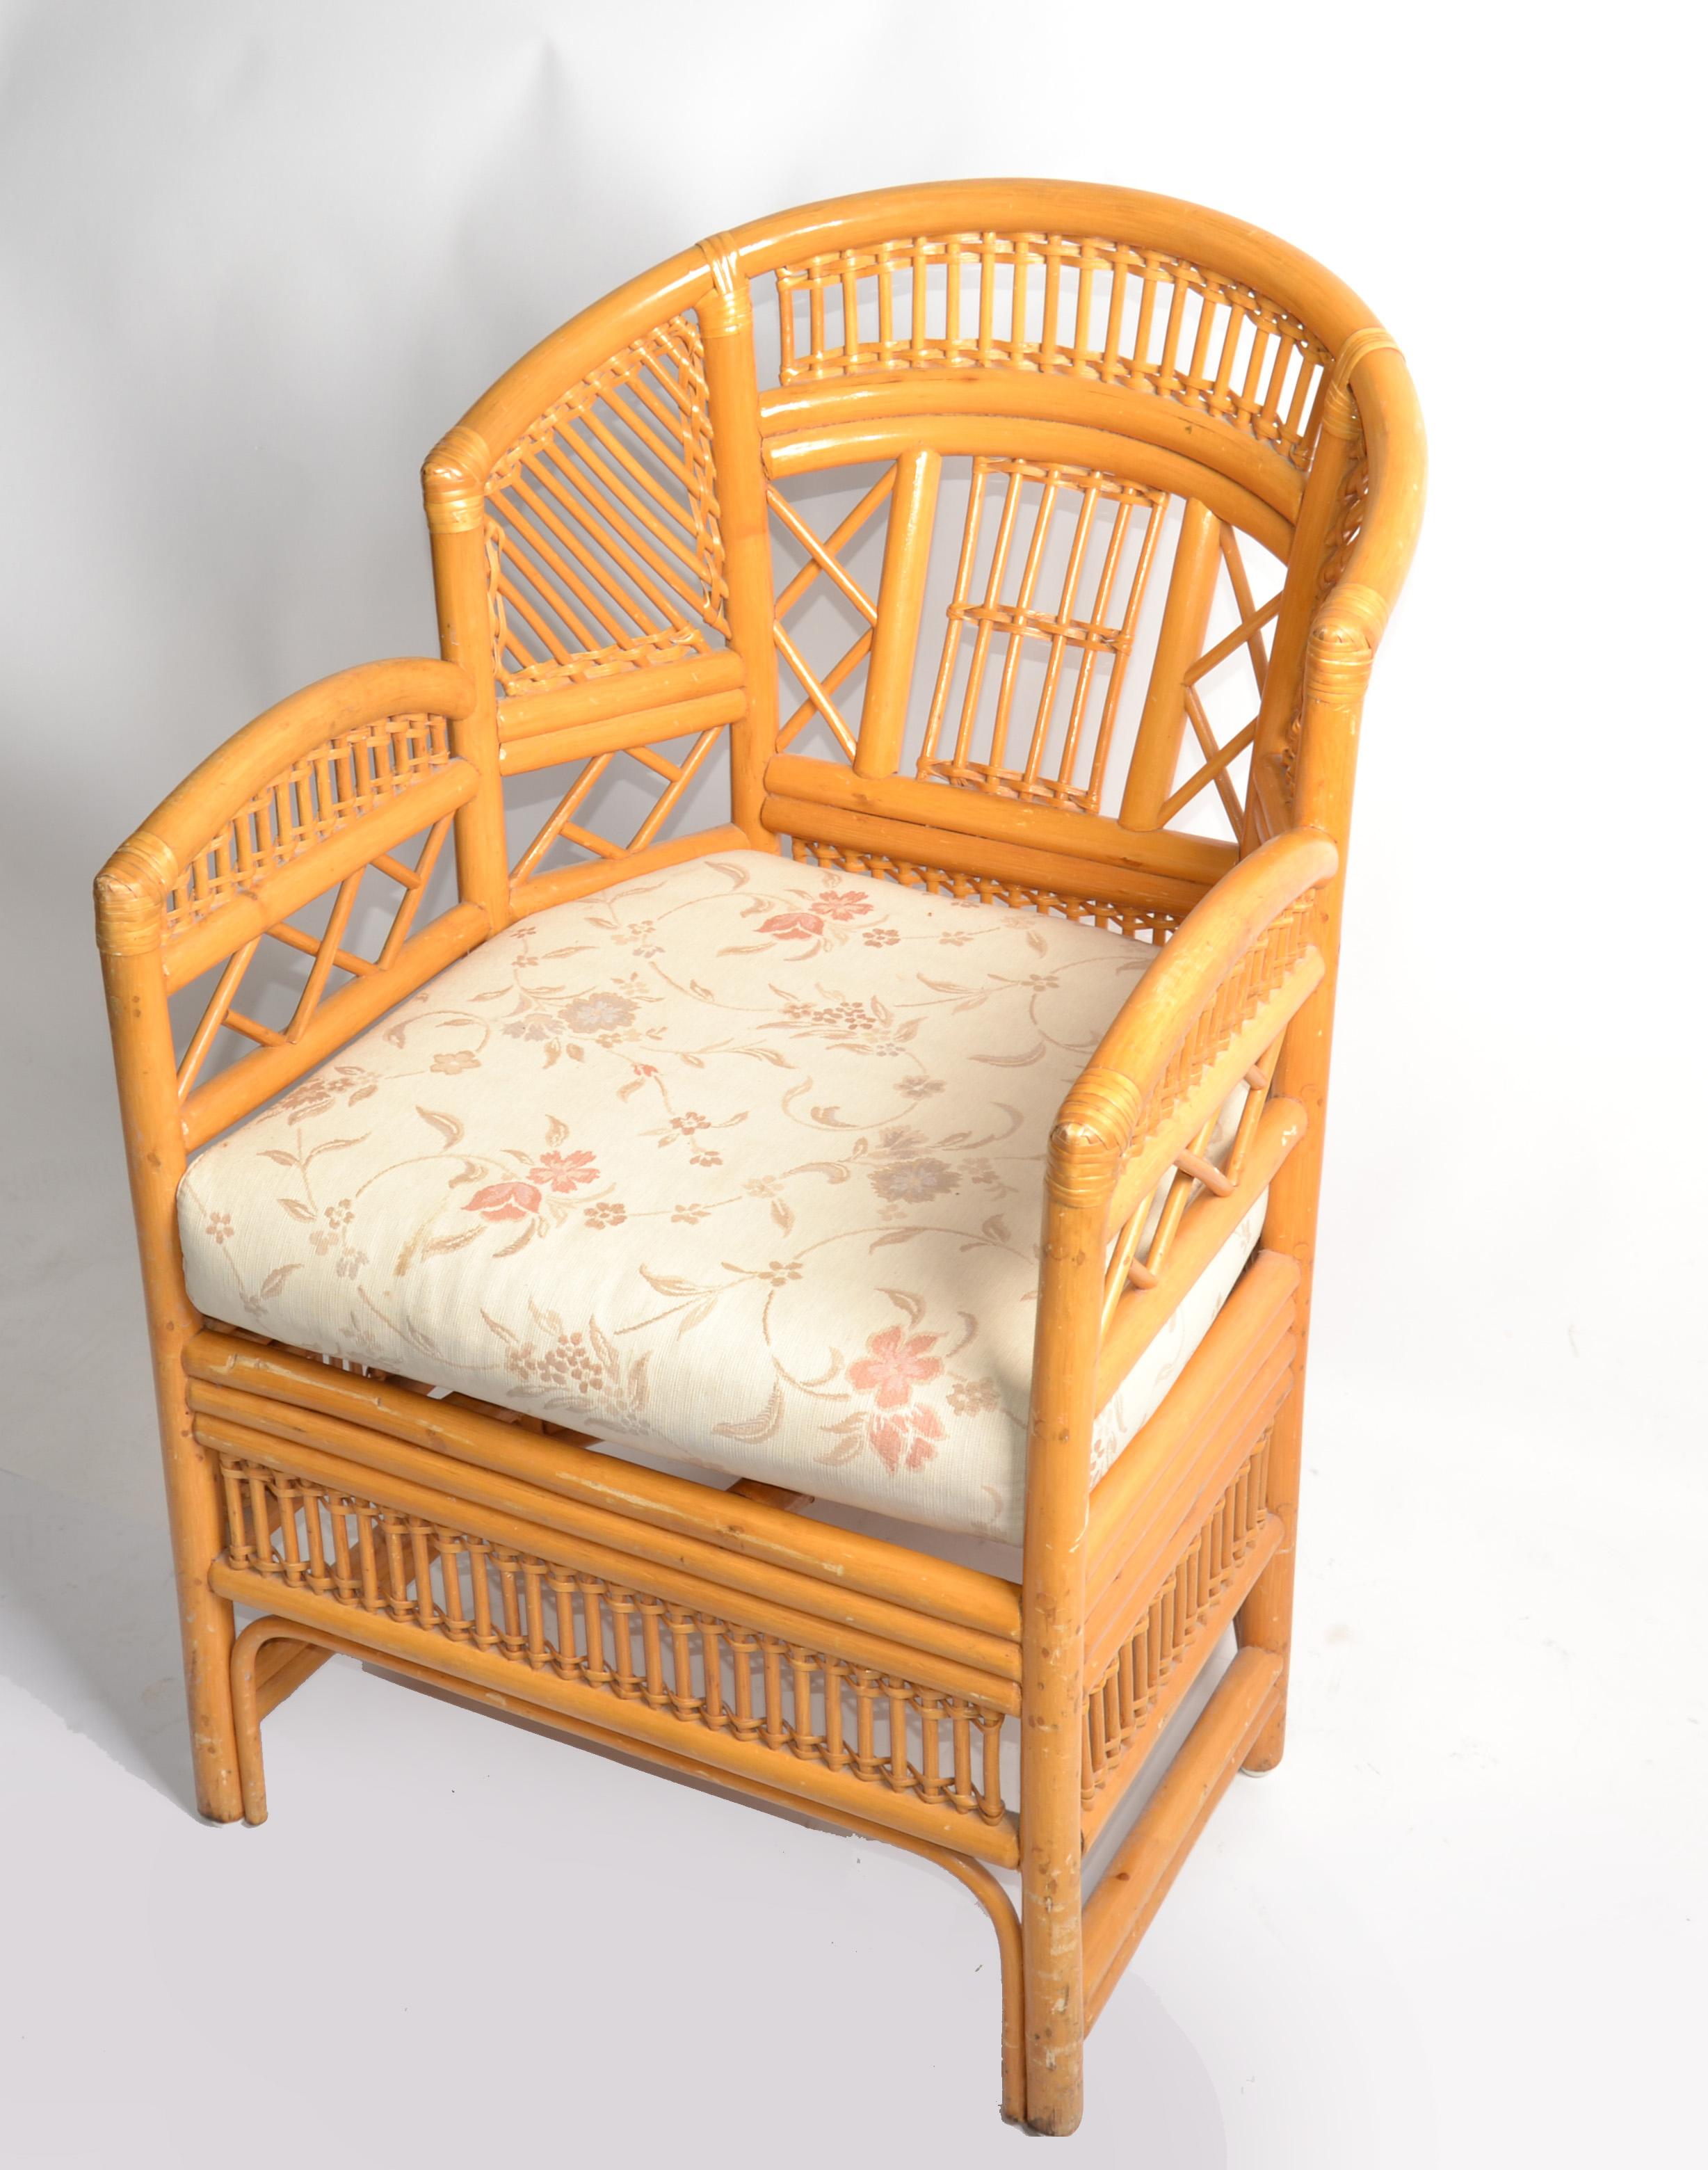 Blonder Vintage-Sessel aus Bambus, Rohrgeflecht und gespaltenem Schilfrohr auf sechs Beinen. Dieser handgefertigte Stuhl mit Sitz aus geflochtenem Schilfrohr verfügt über einen Bambusrahmen und chinesisch inspirierte Bambusmuster.
Die Rückenlehnen